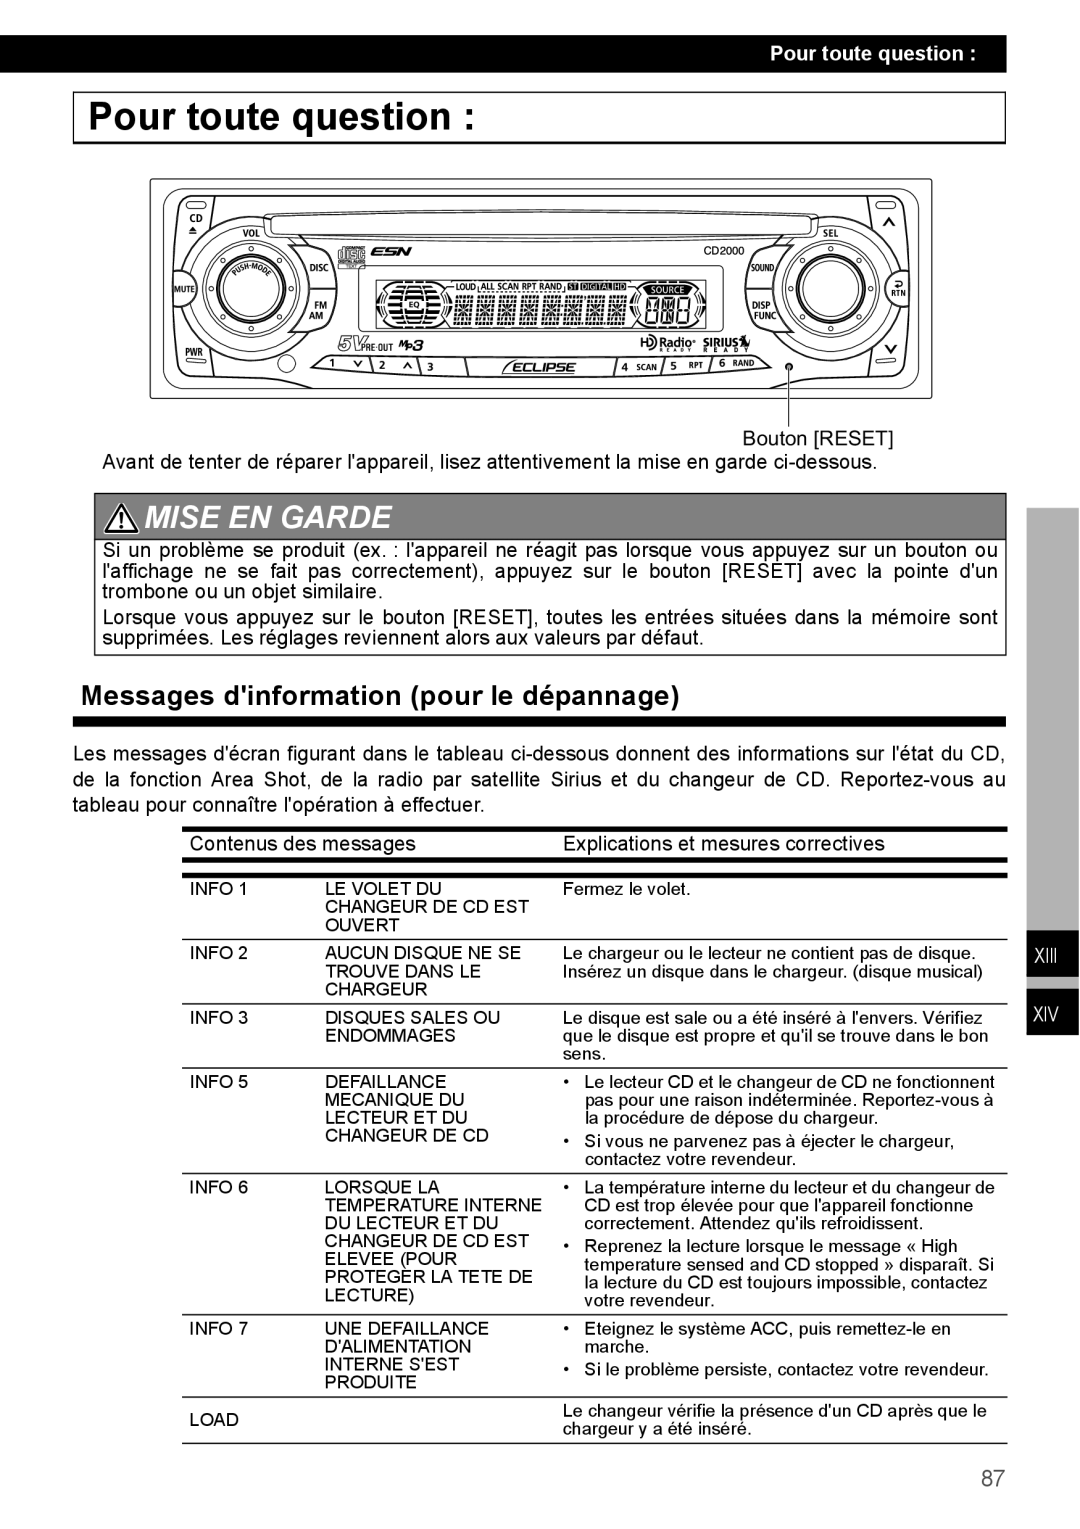 Eclipse - Fujitsu Ten CD2000 manual Pour toute question, Mise En Garde, Messages dinformation pour le dépannage, Xiii 